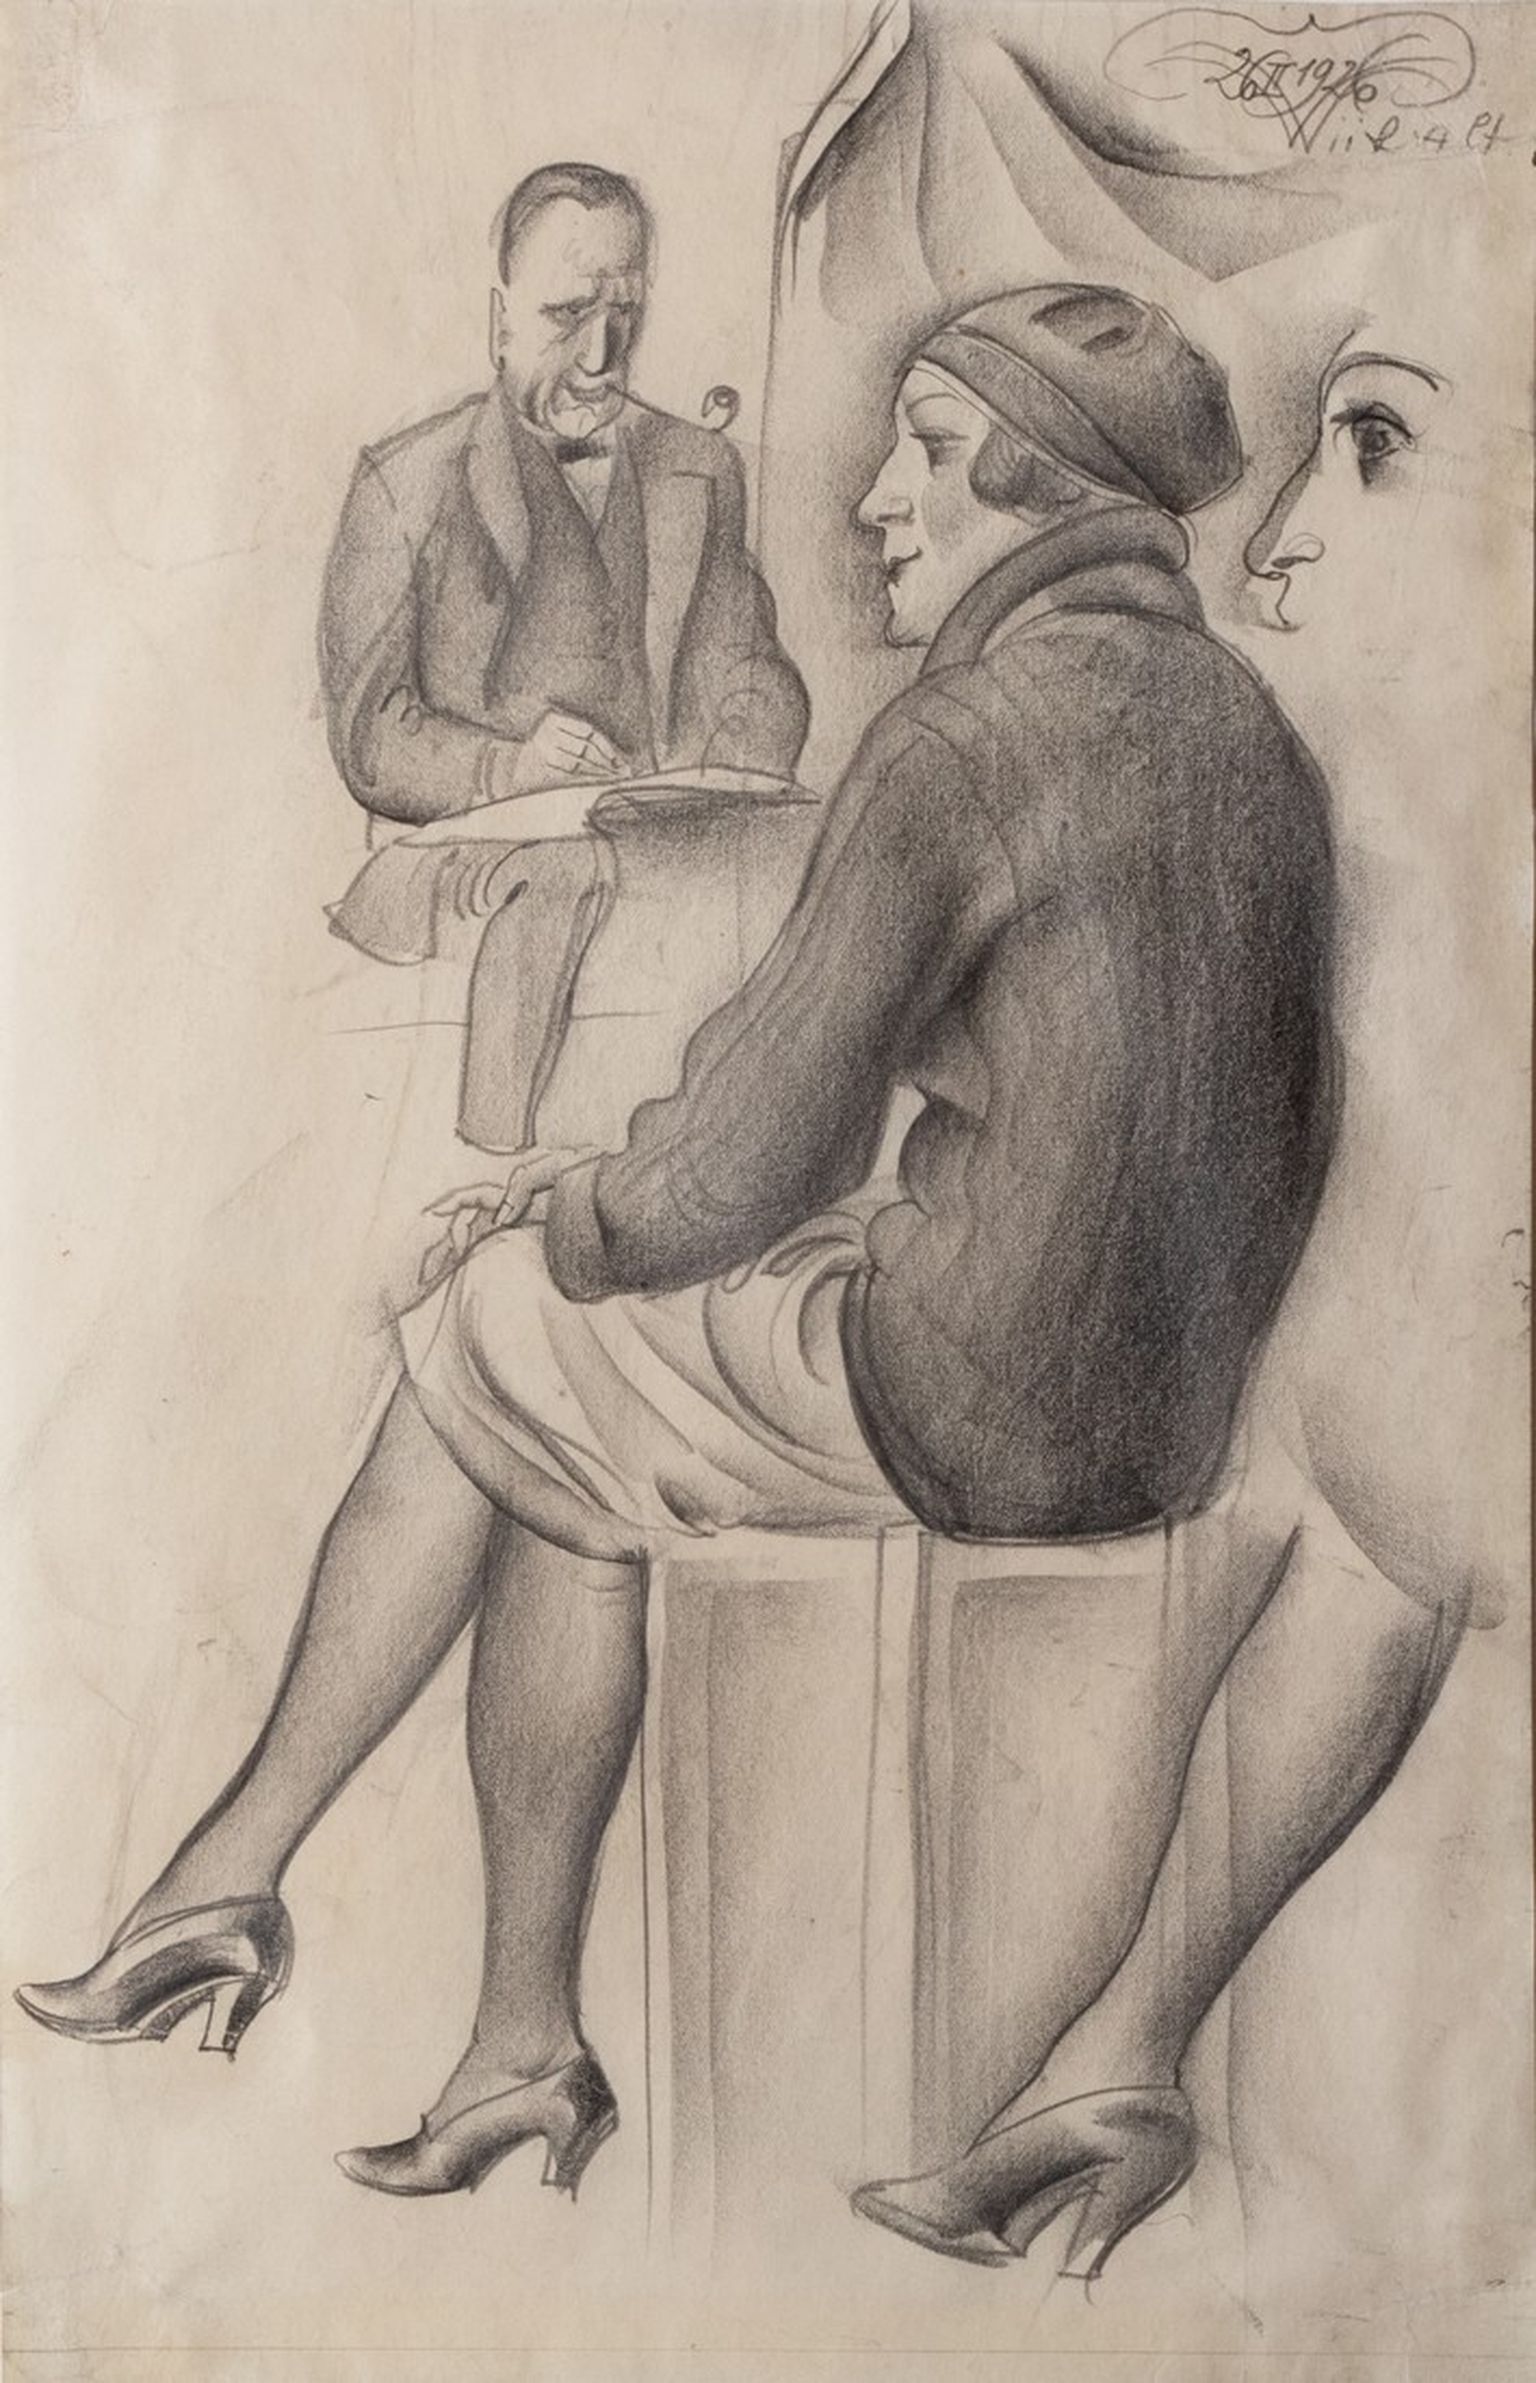 Eduard Wiiralt
Kunstnik ja modell
1926. Pliiats, paber Lm 37.7 x 24.2 cm (raamitud)